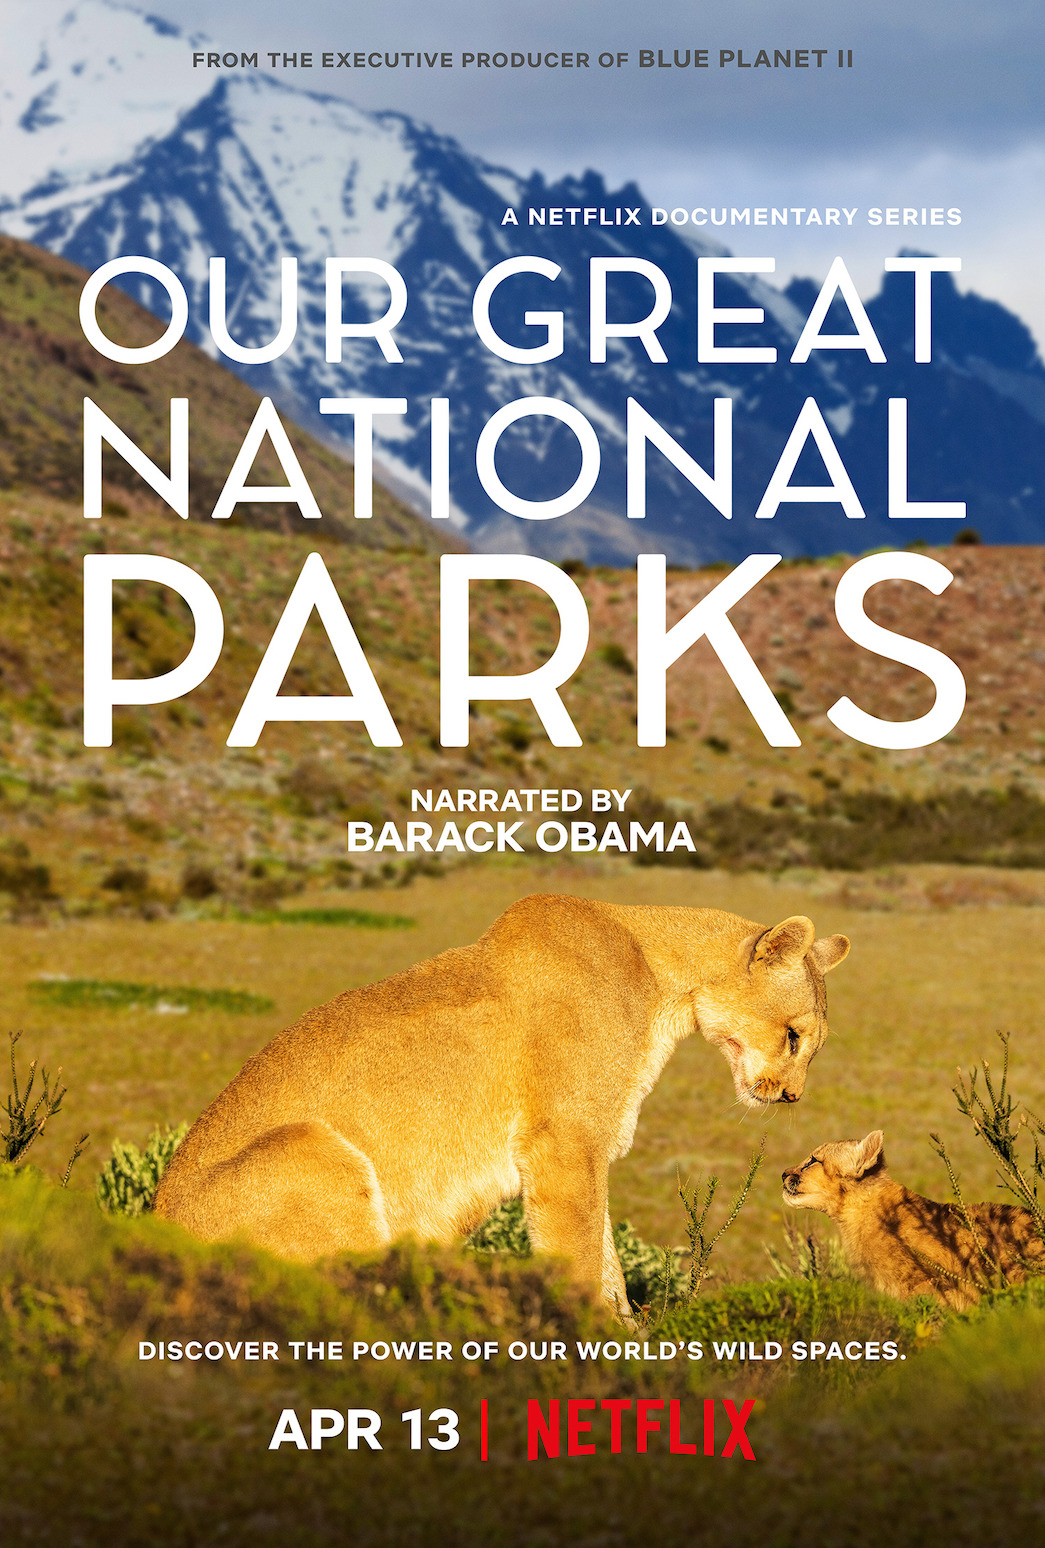 Barack Obama Nature Documentary 'Our Great National Parks' Trailer -  Netflix Tudum